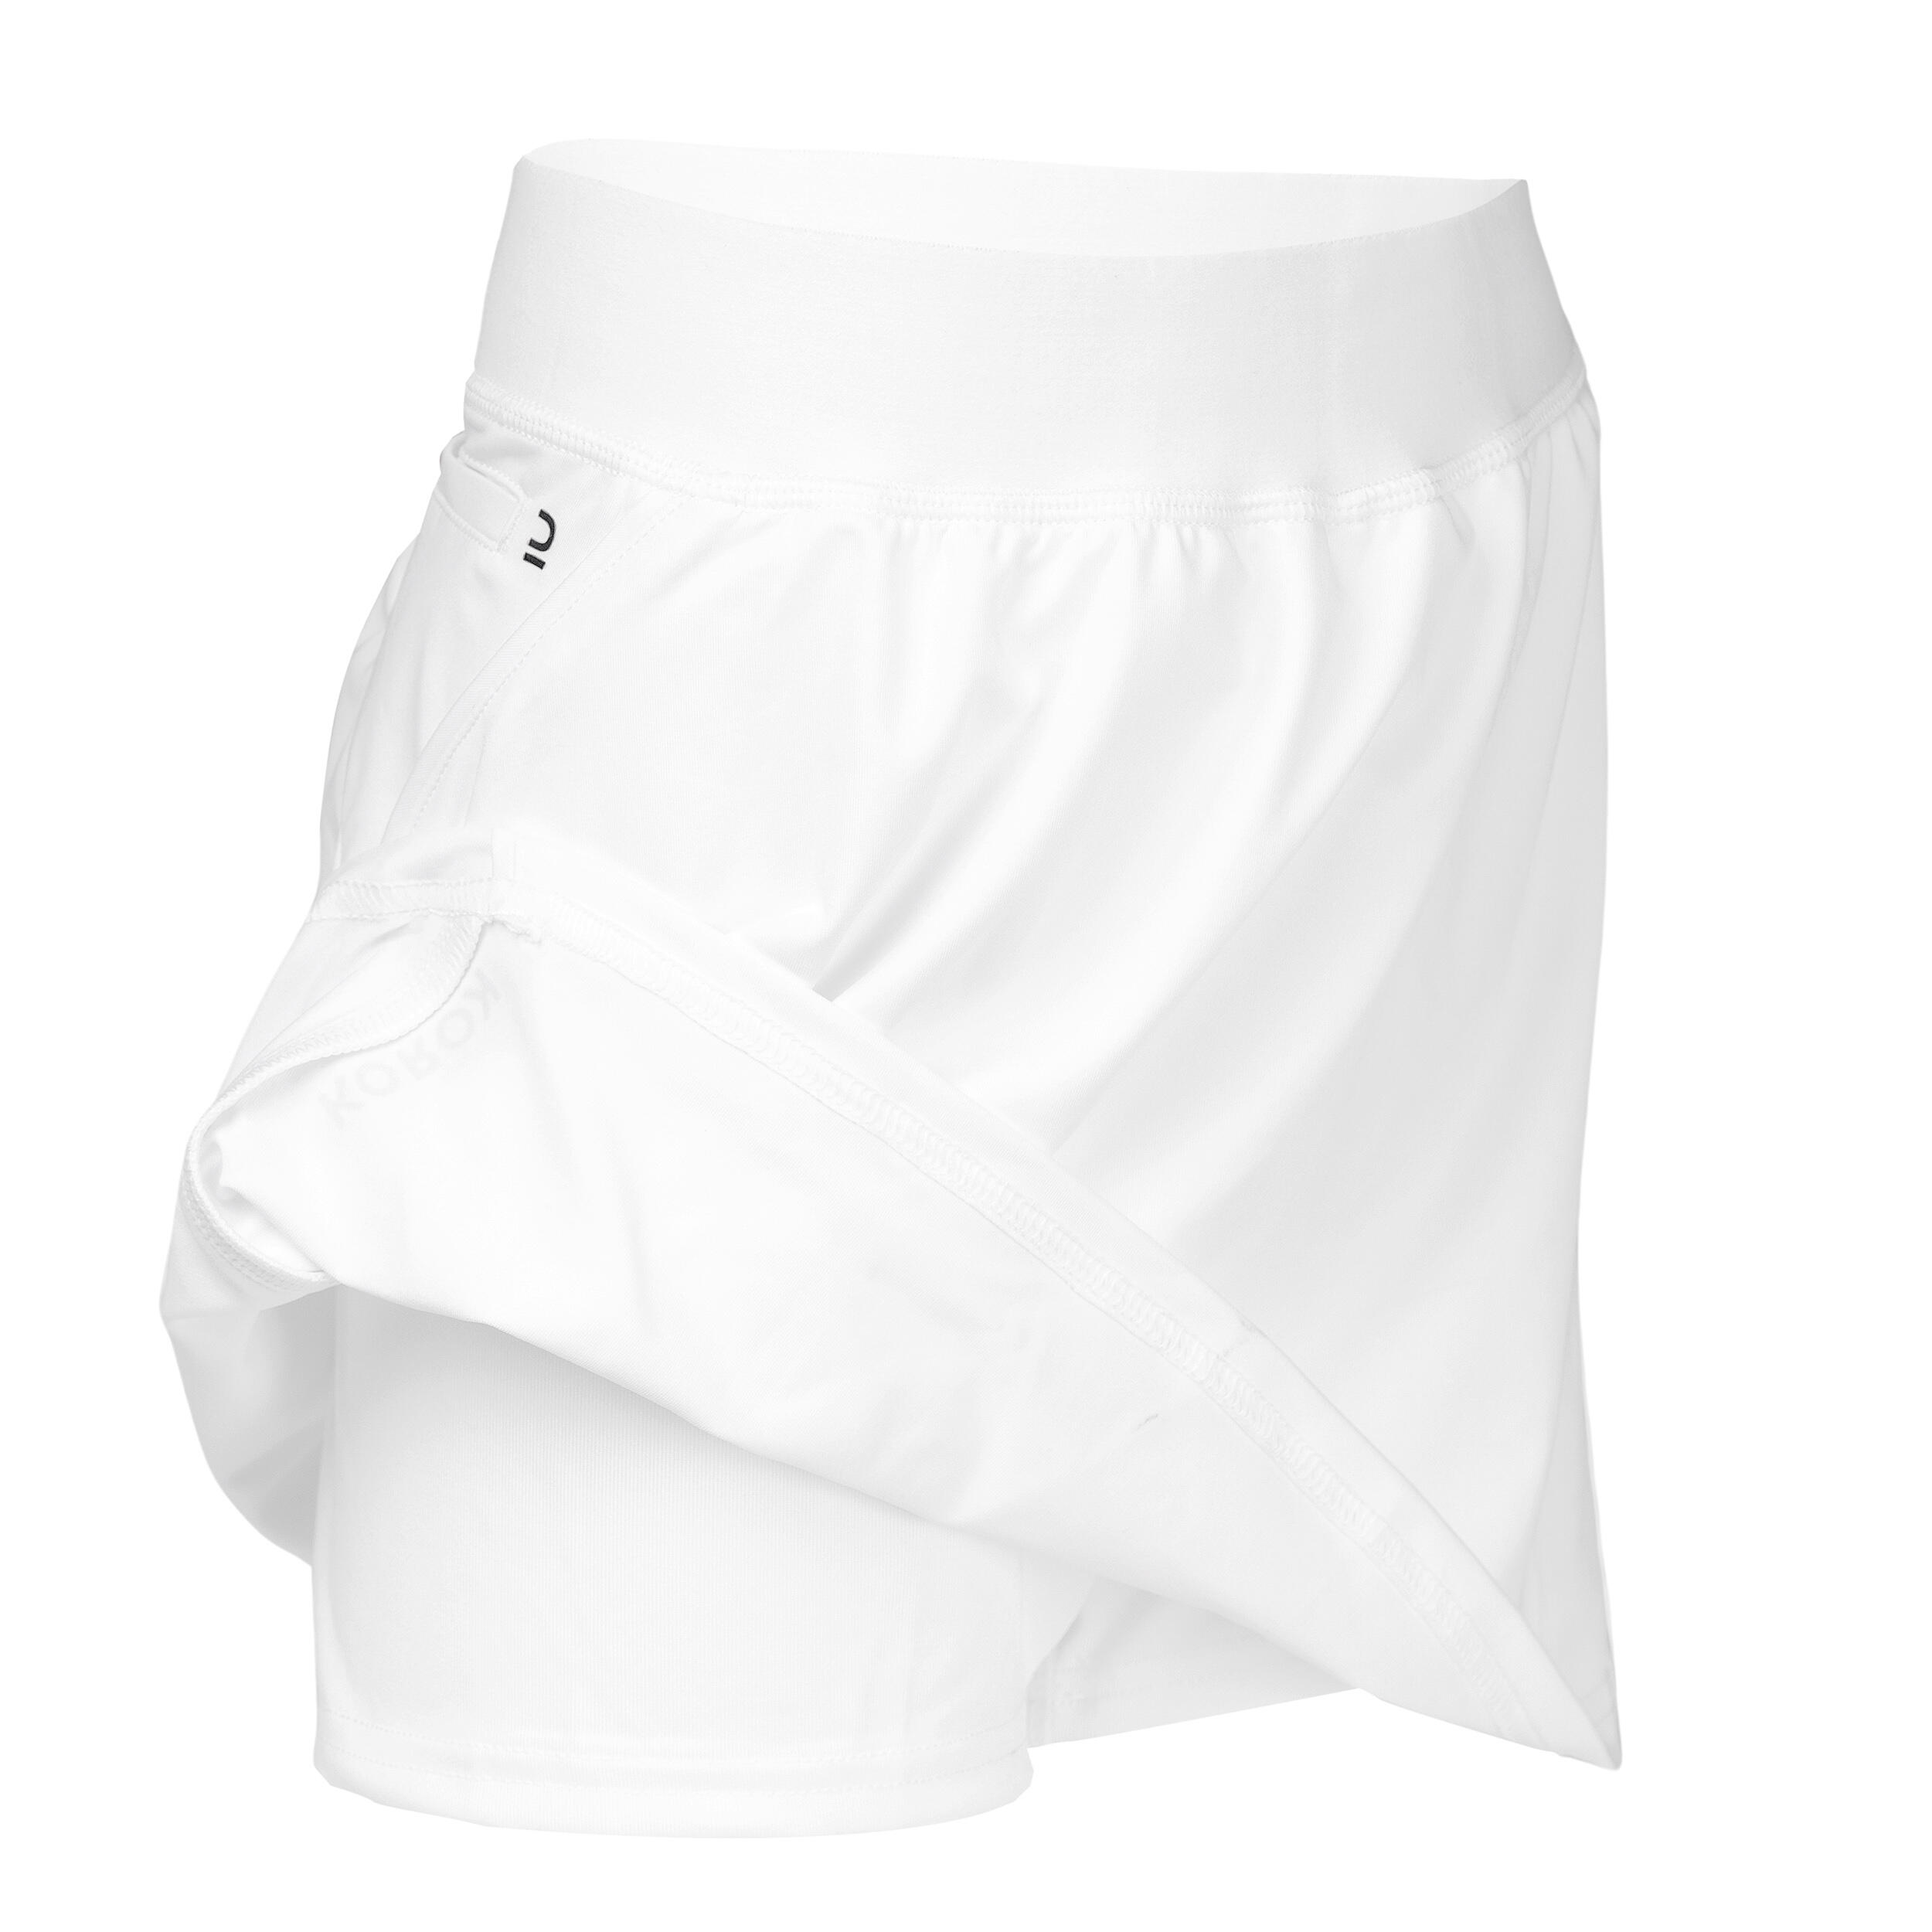 Girls' High-Intensity Field Hockey Skirt FH900 - White 3/4